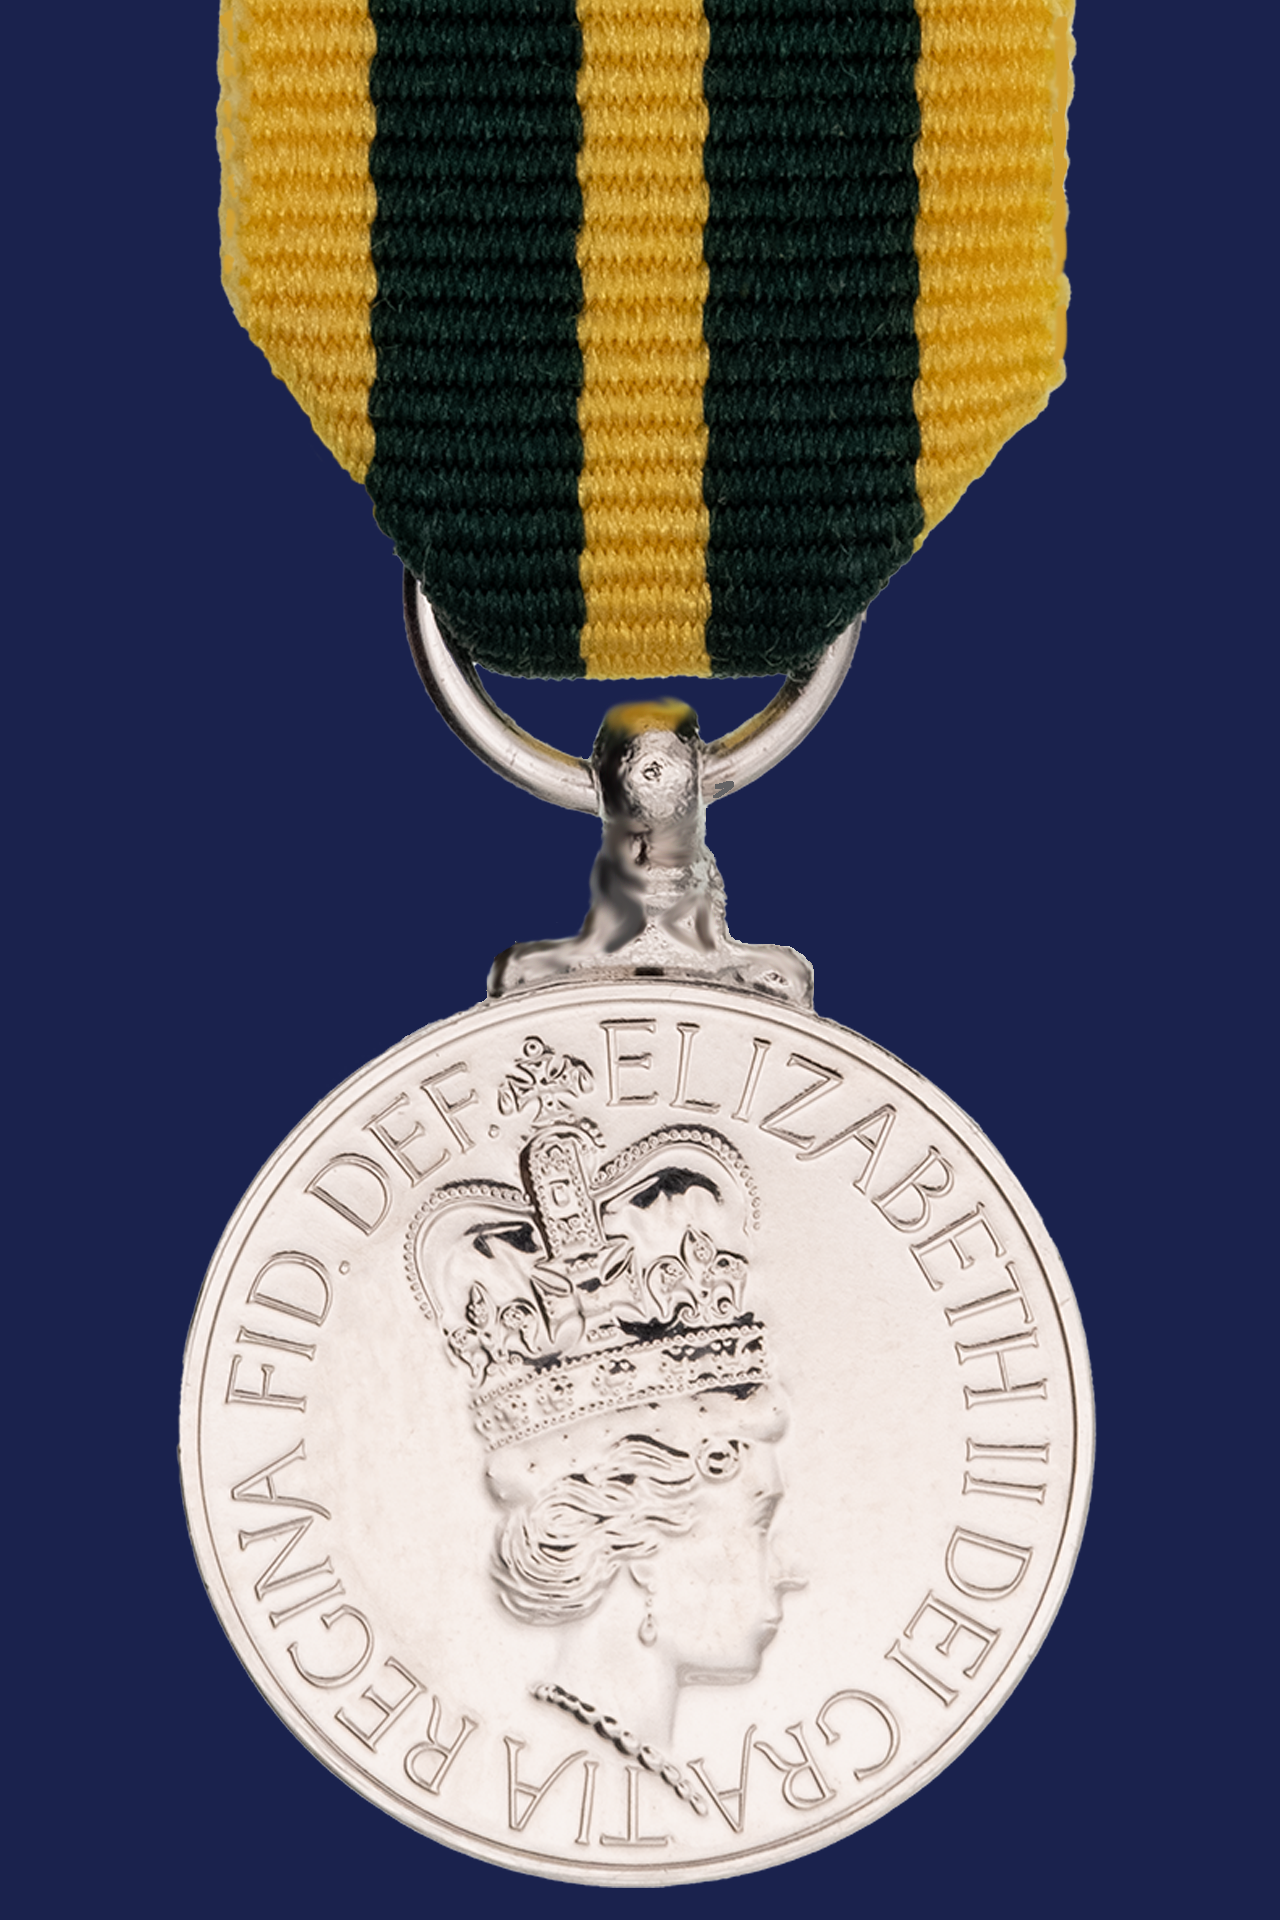 Queens Volunteer Reserves Medal Miniature Medal